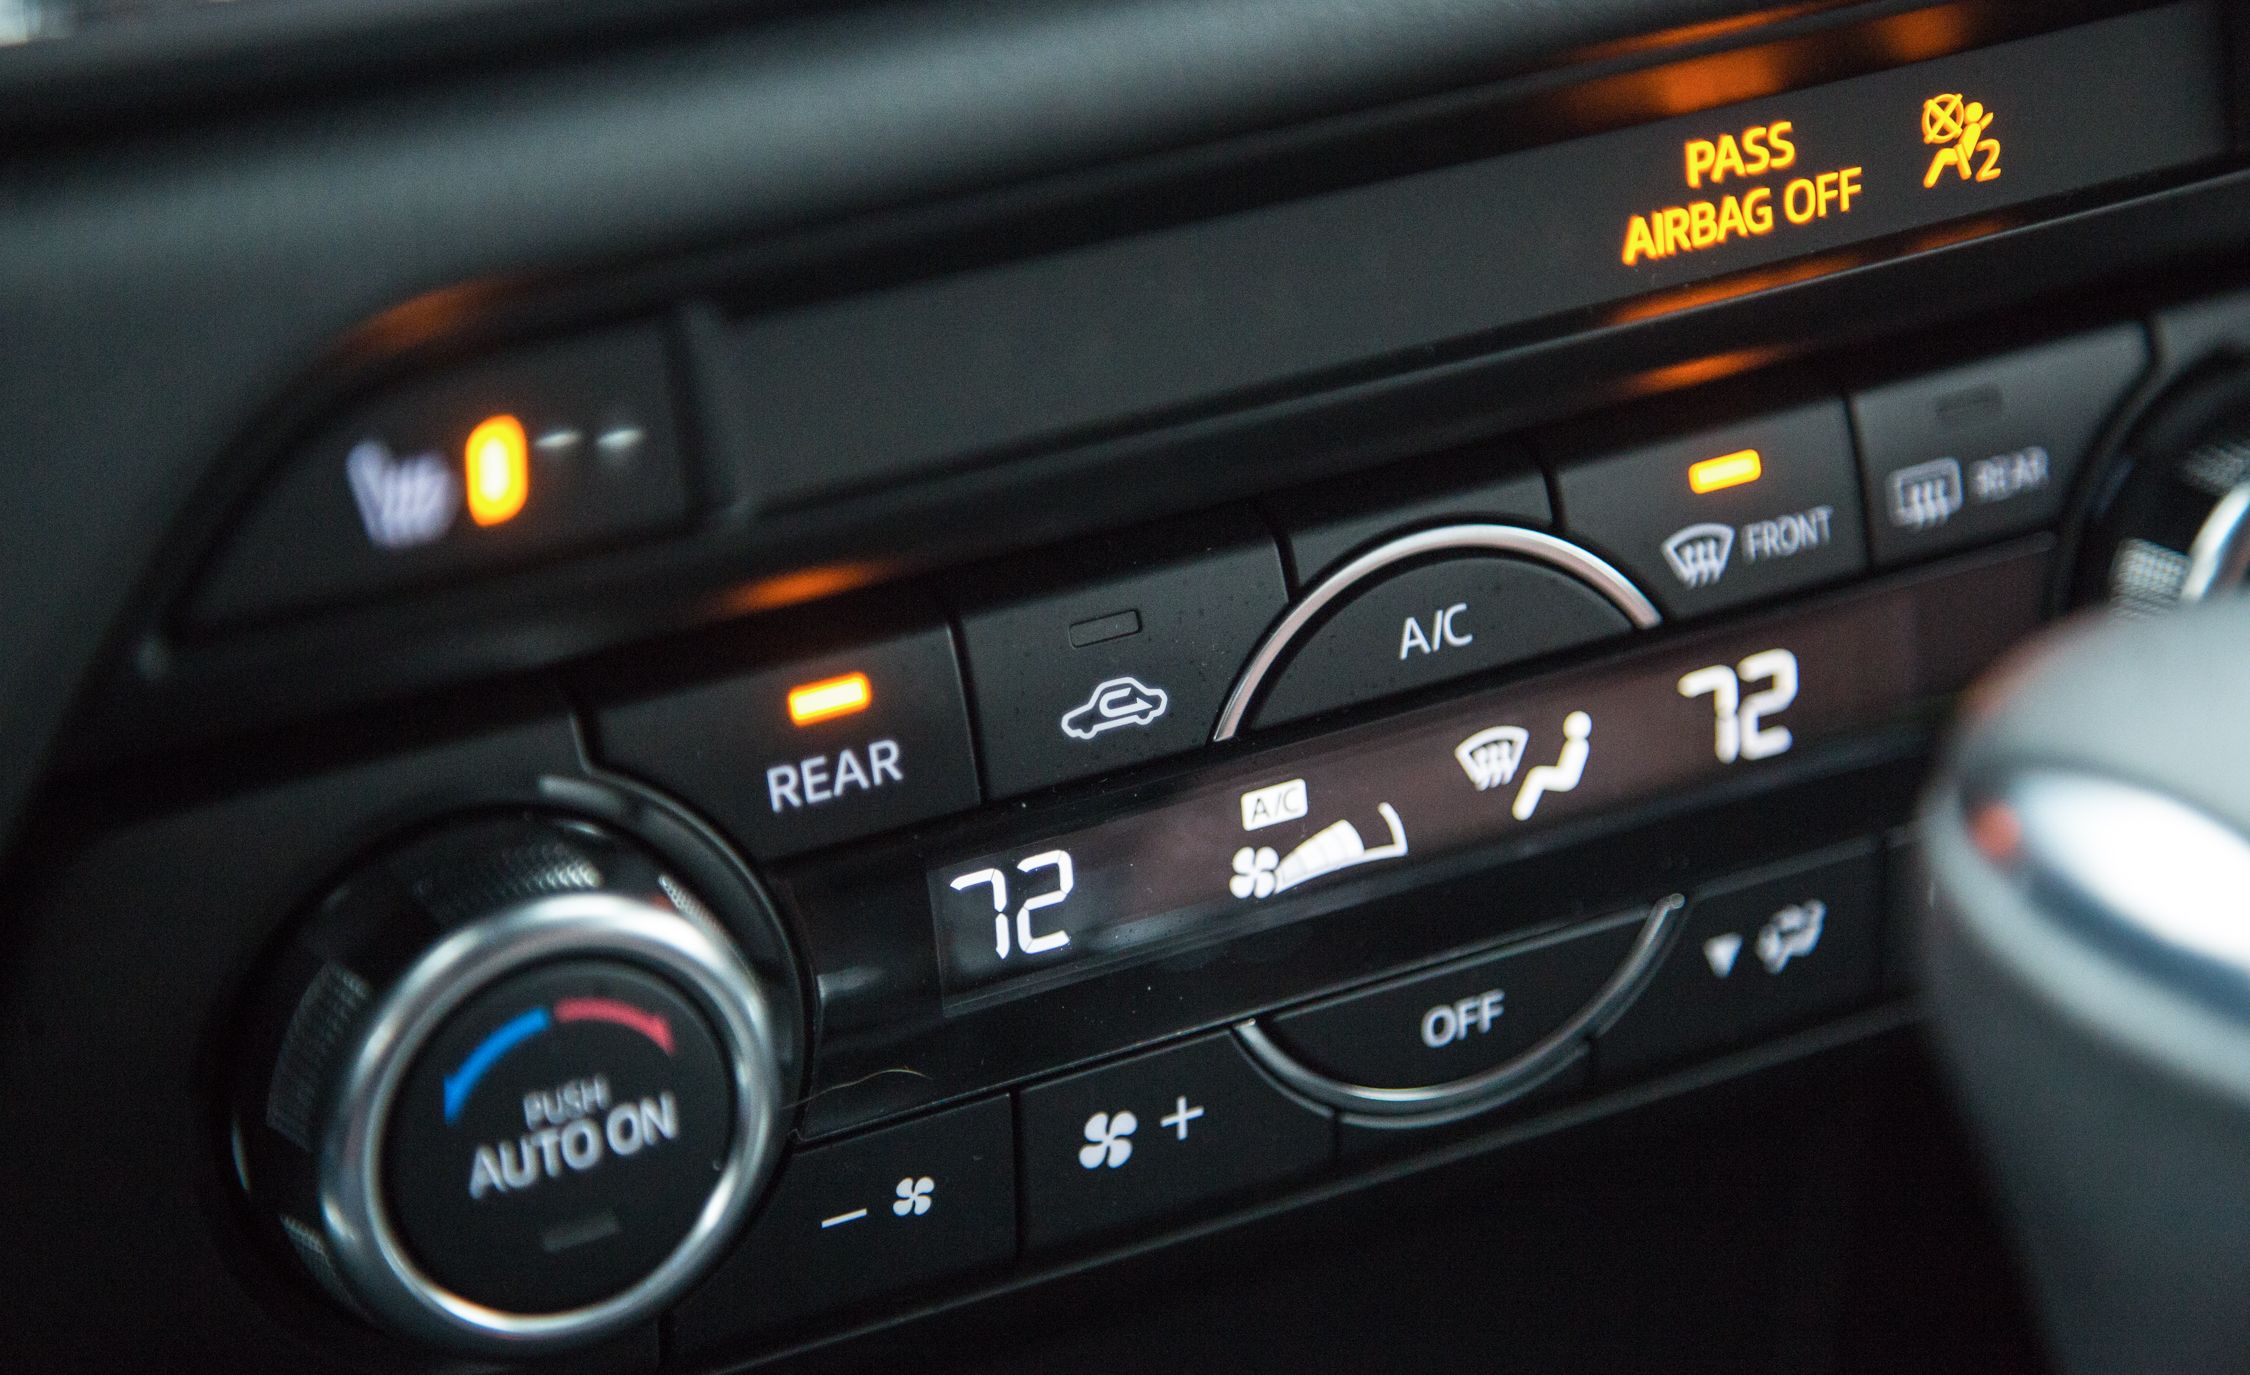 2017 Mazda CX 9 Interior View Climate Control (View 12 of 28)